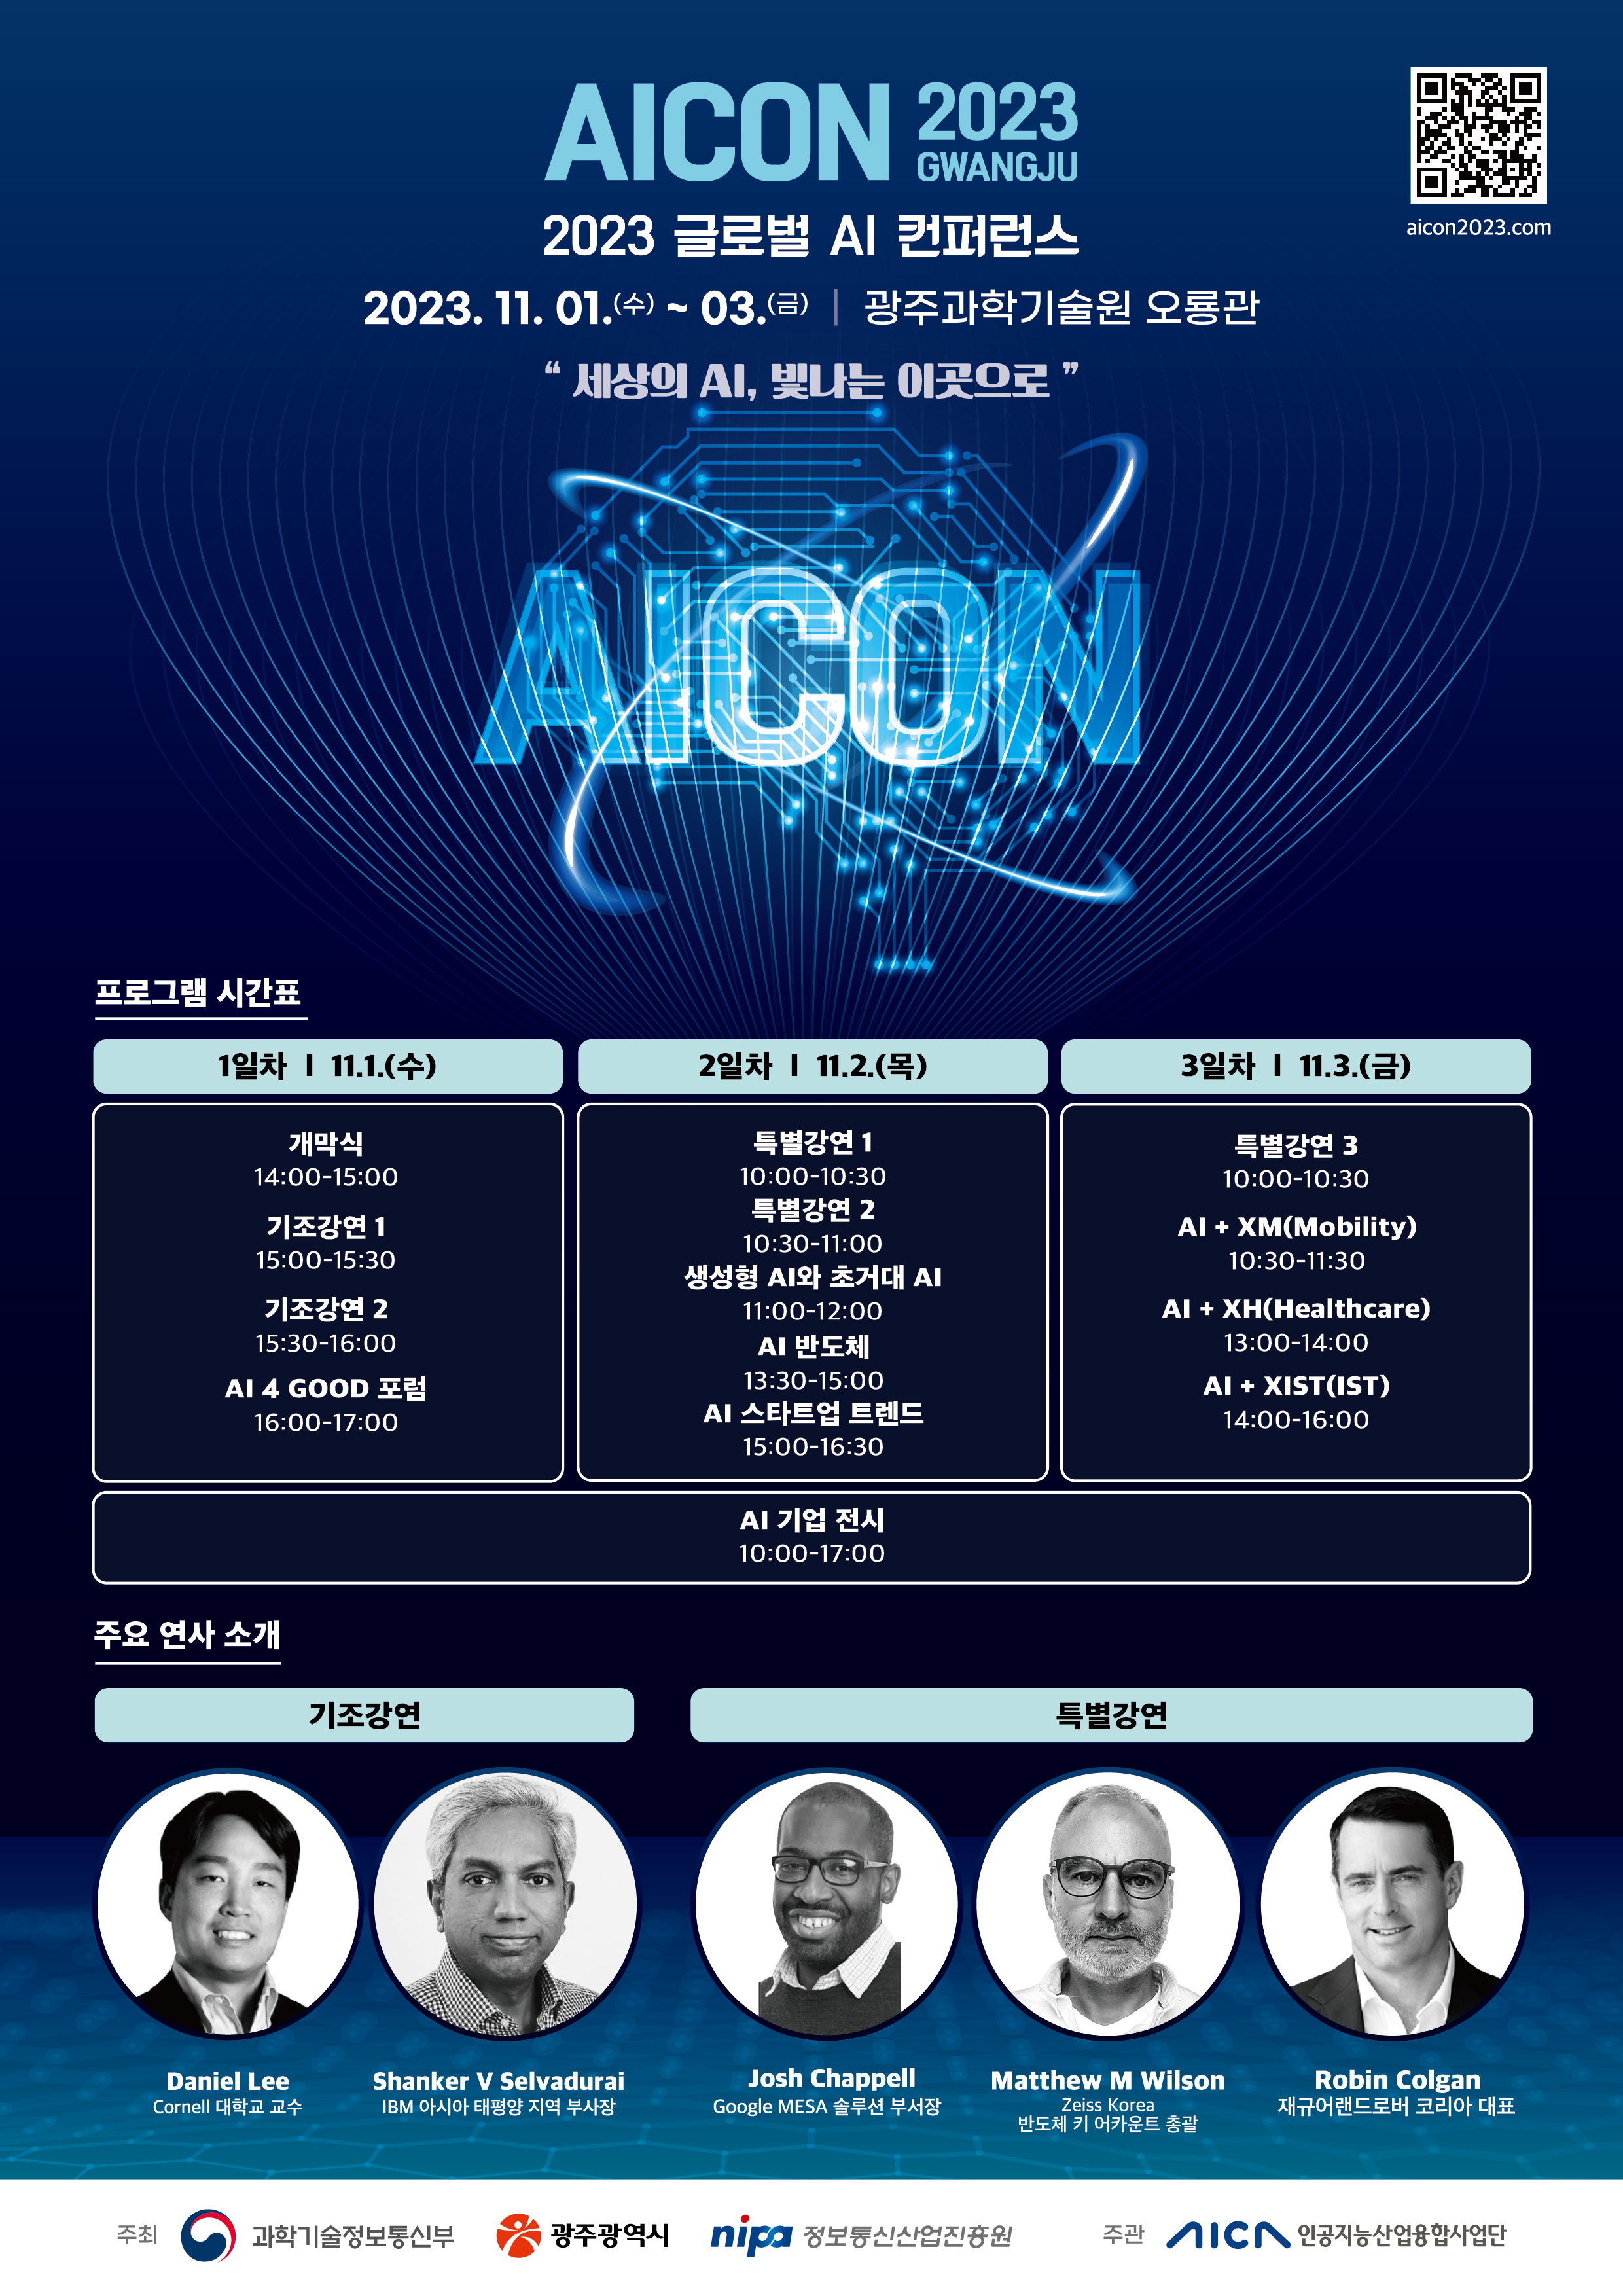 (광주광역시) 글로벌 인공지능 콘퍼런스 'AICON 광주 2023' 개최 알림